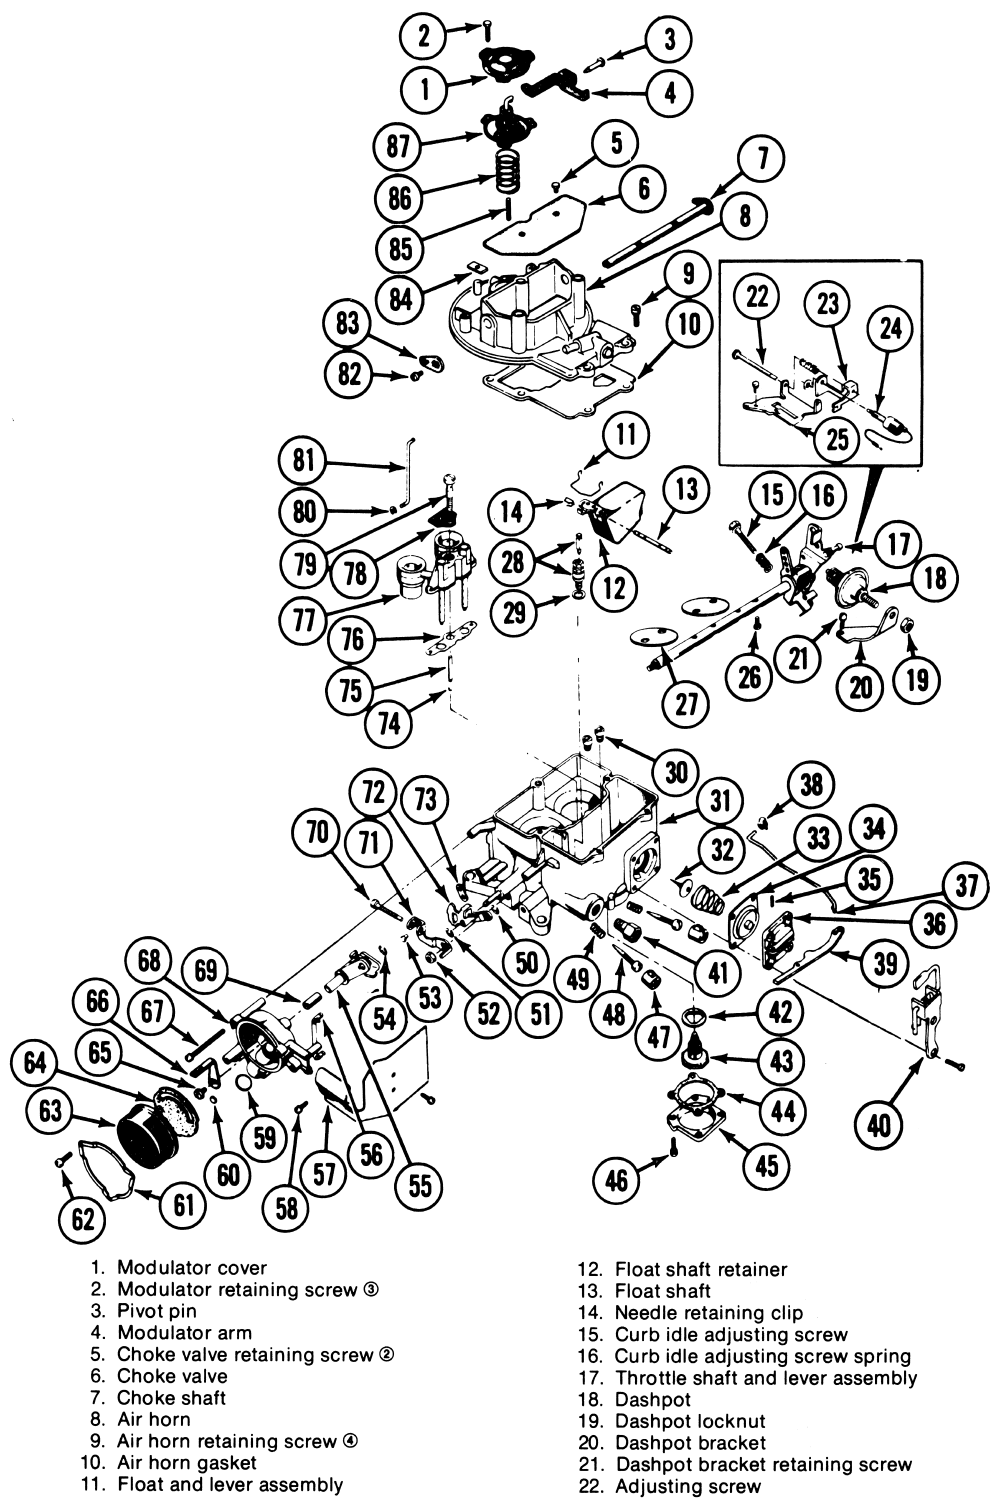 motorcraft 2100 electric choke wiring diagram